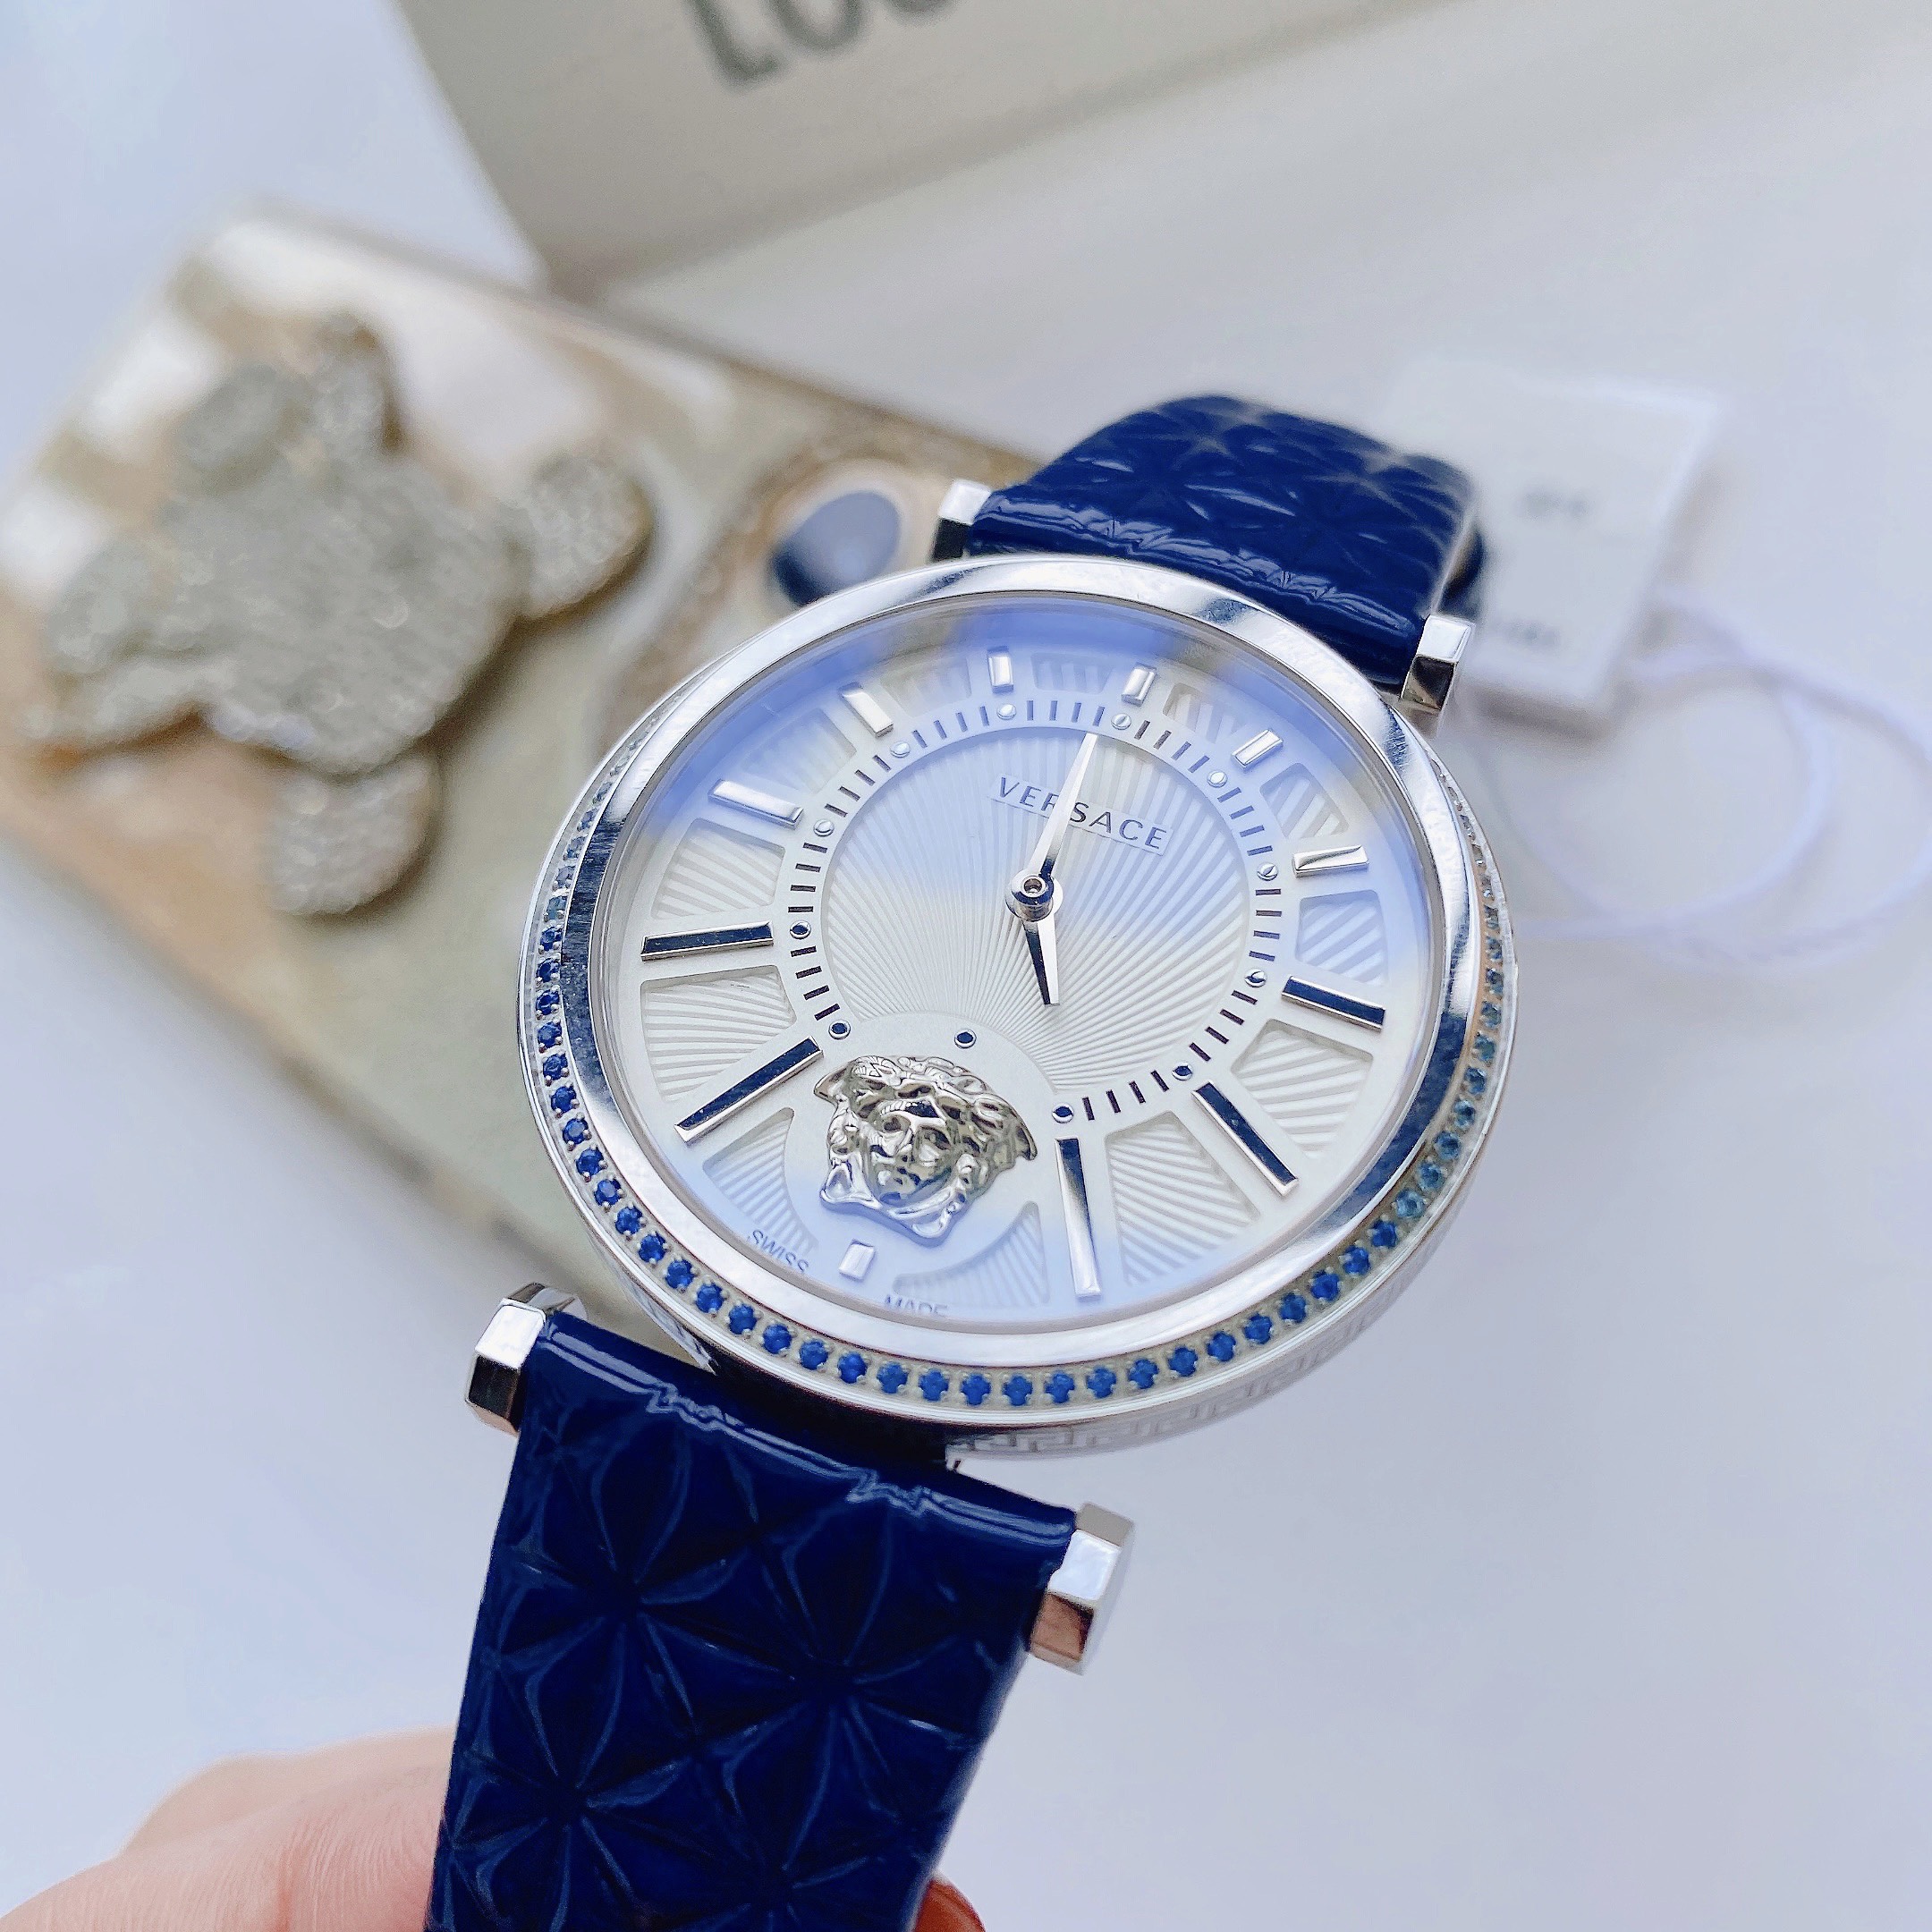 Đồng Hồ Versace - Thương hiệu Versace đẳng cấp, thiết kế hoàn mỹ với Máy quazt, Kính sapphire nguyên khối, viền đính pha lê xanh dương, trắng sang trọng